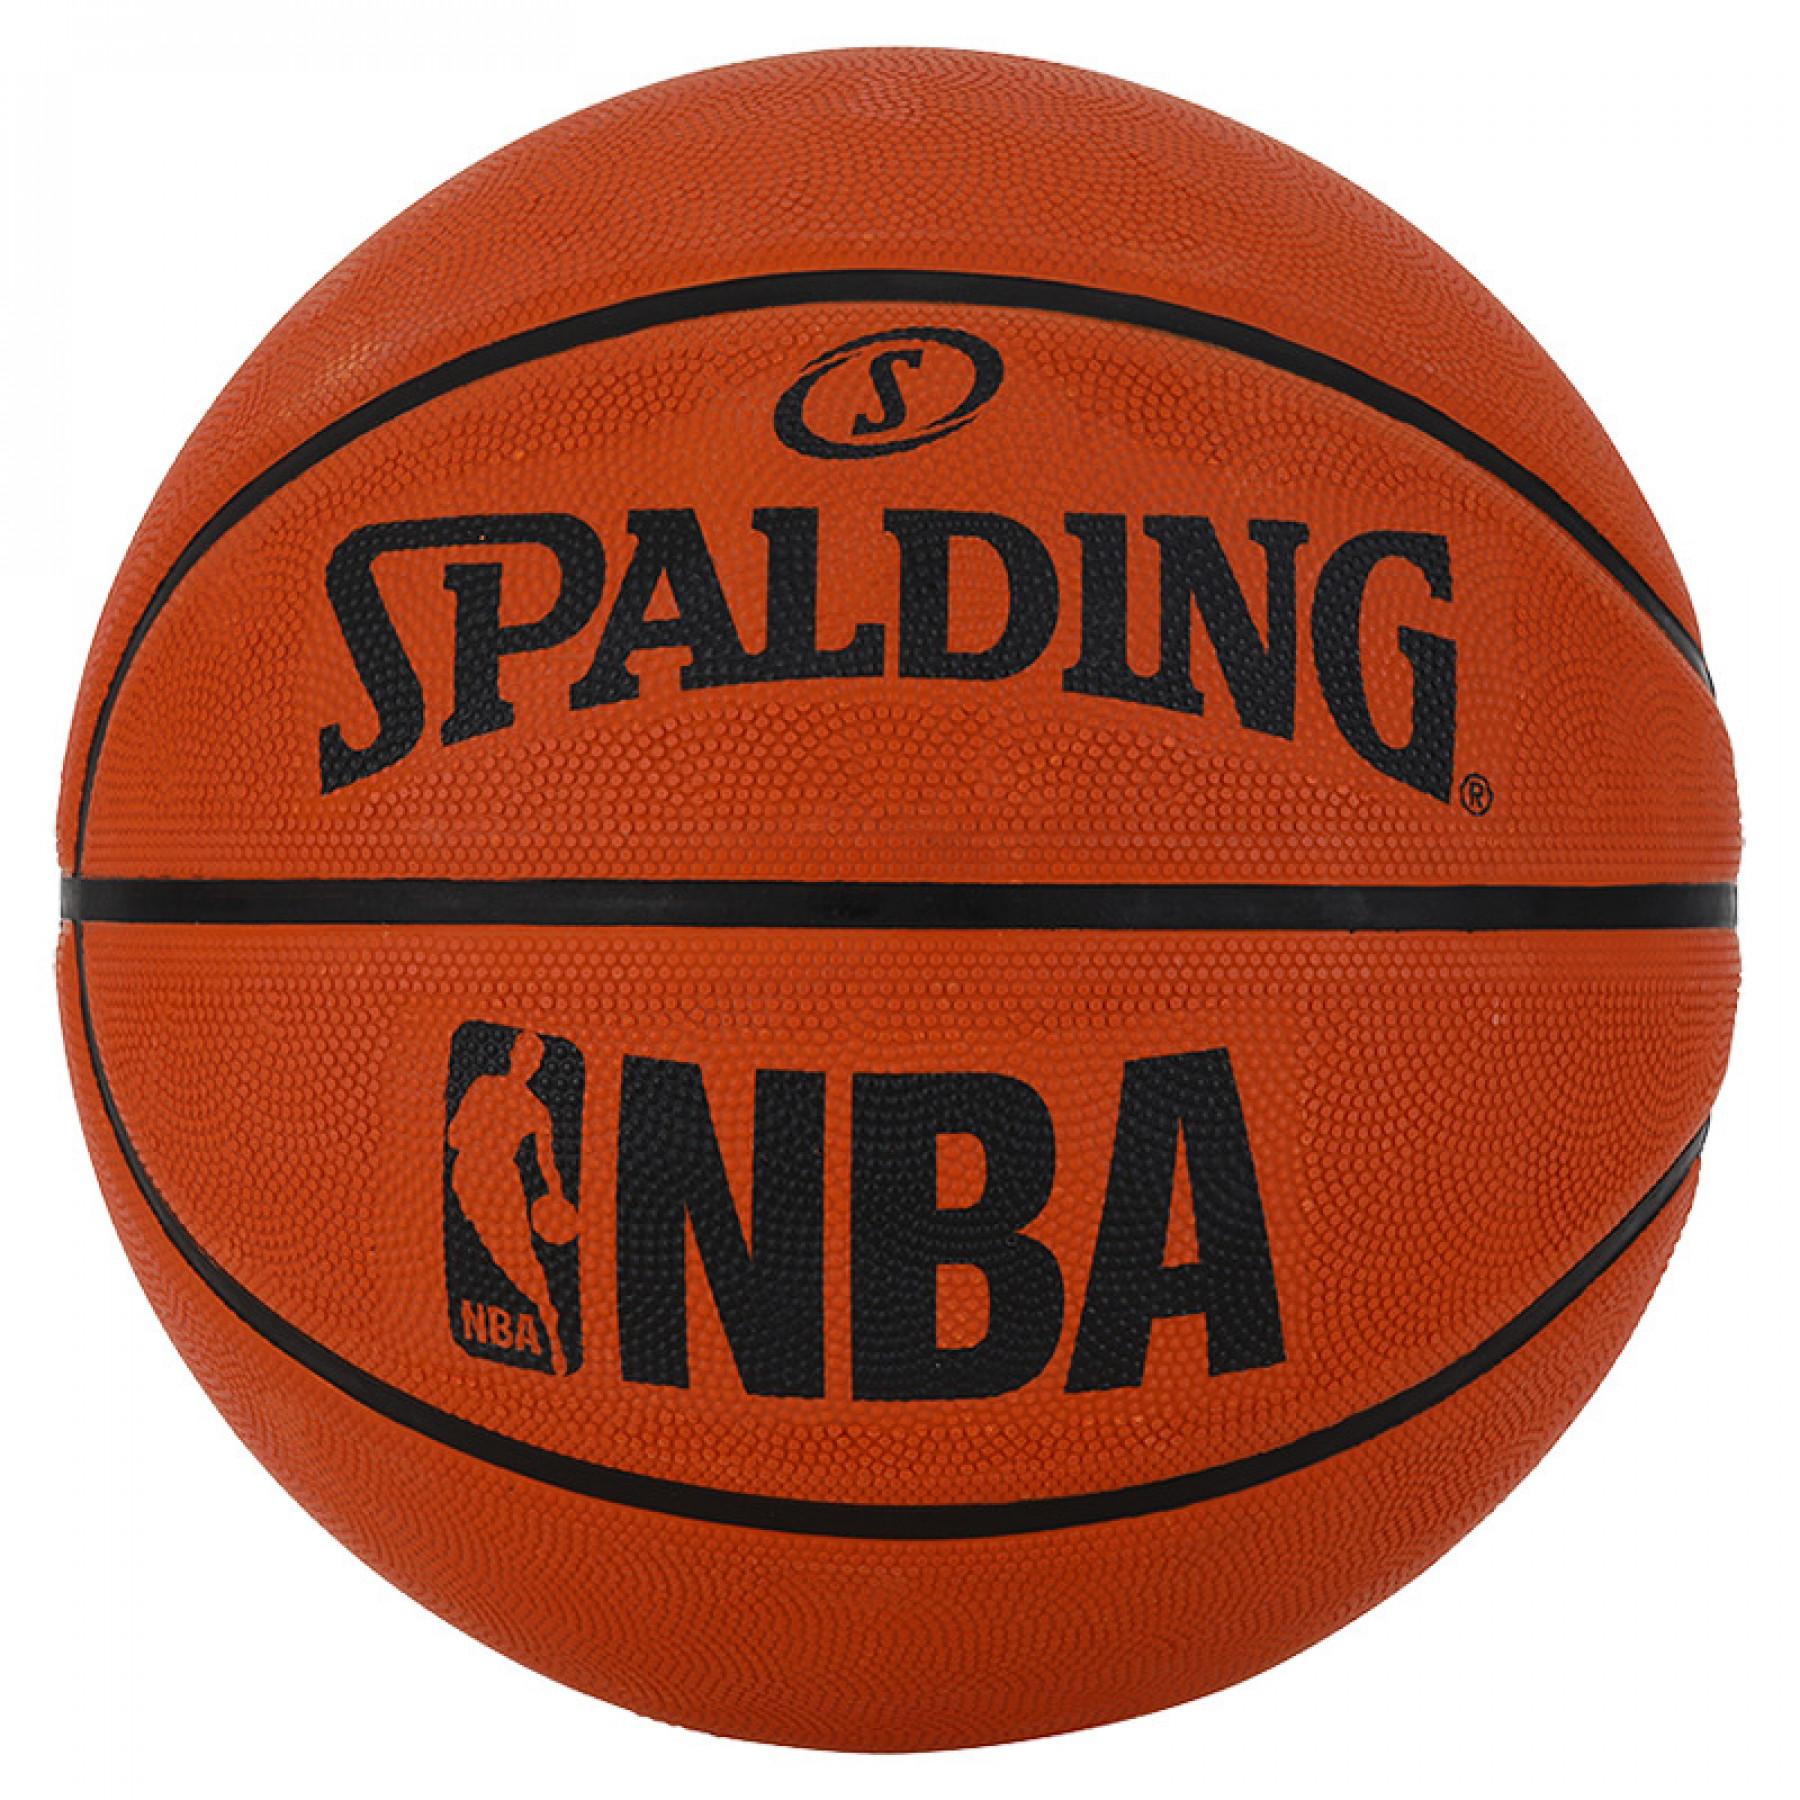 Balloon Spalding NBA (83-964z)